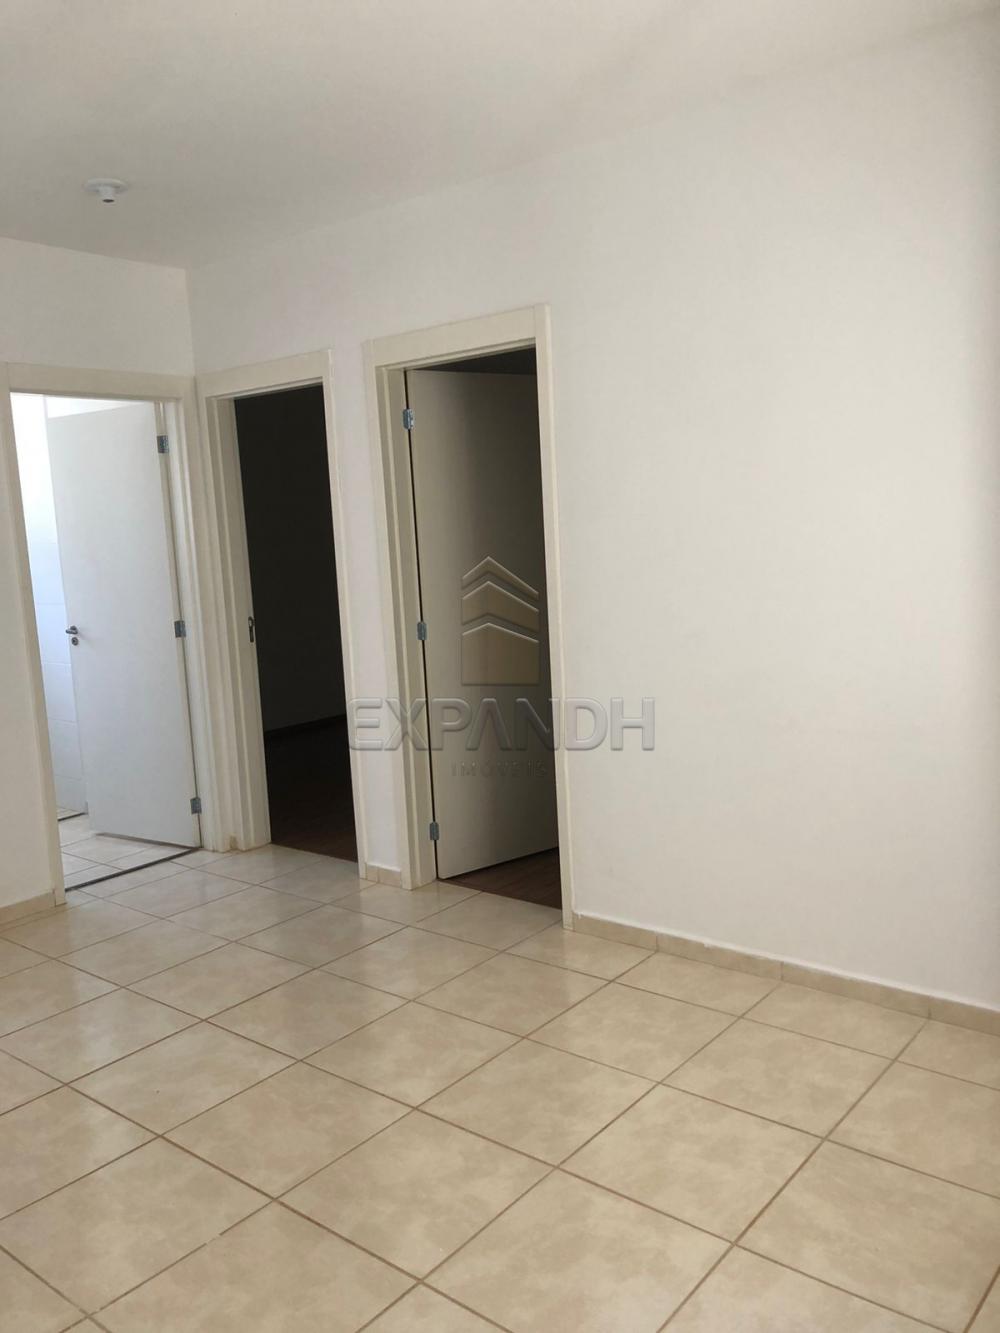 Alugar Apartamentos / Padrão em Sertãozinho R$ 500,00 - Foto 5